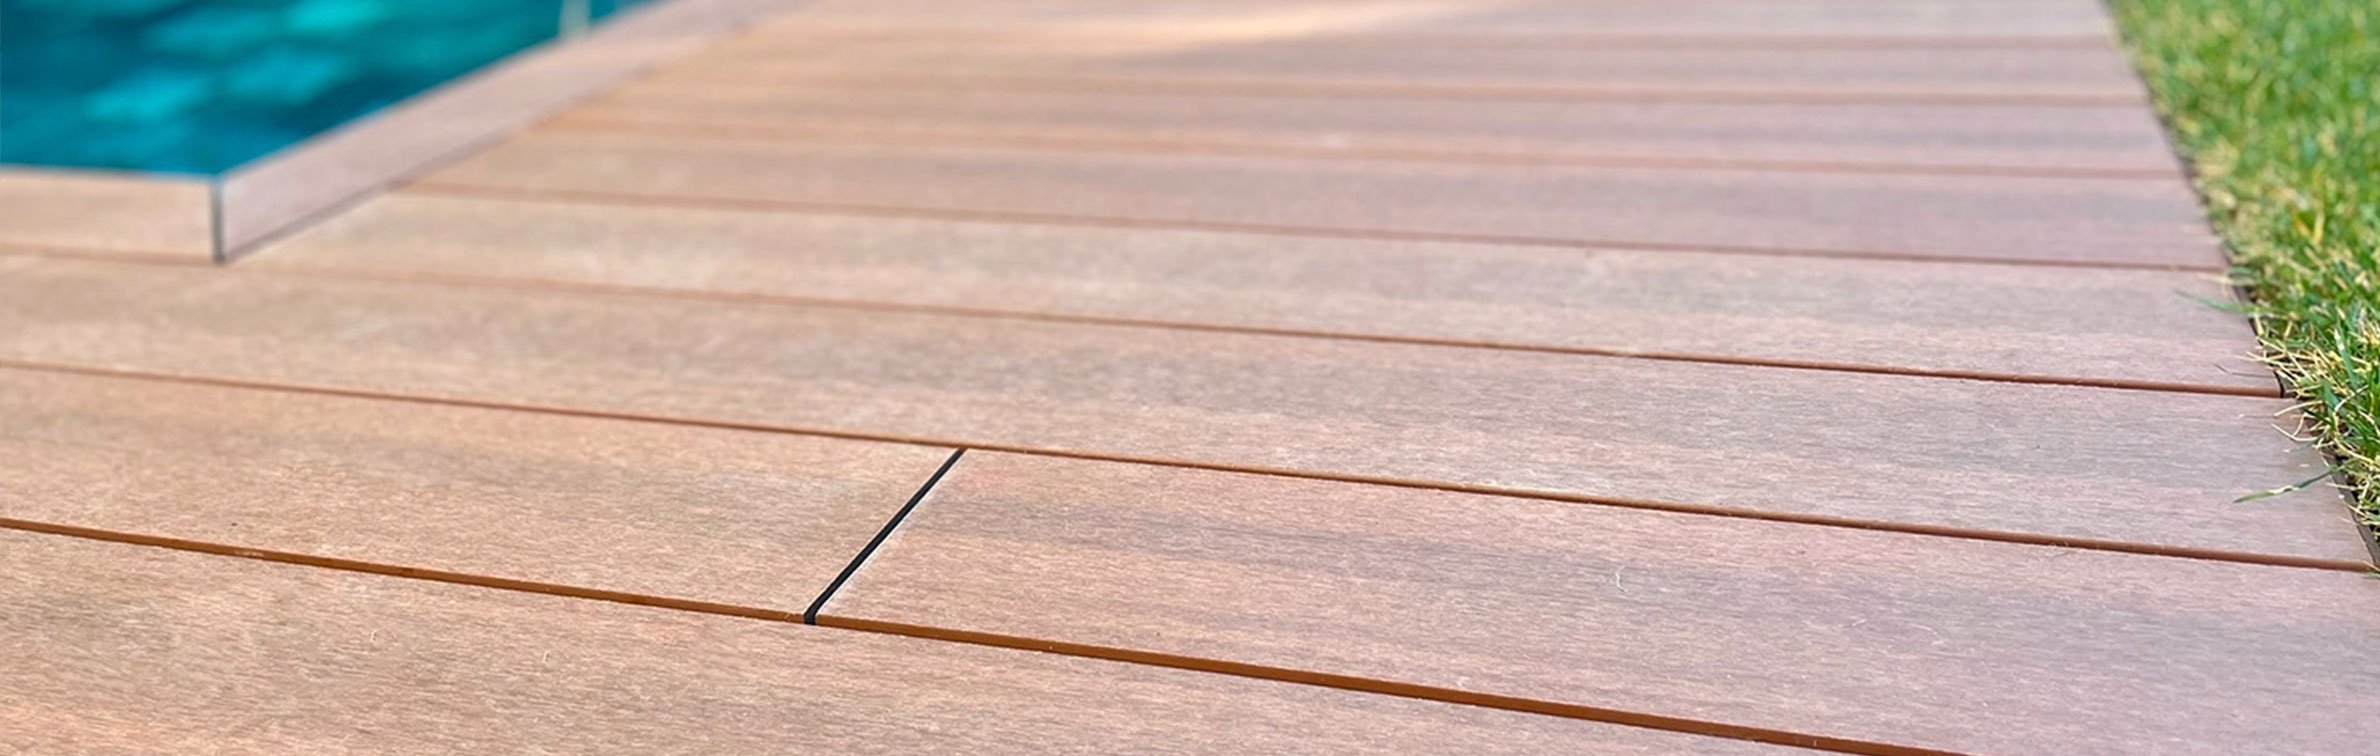 lame de terrasse en bois composite neowood